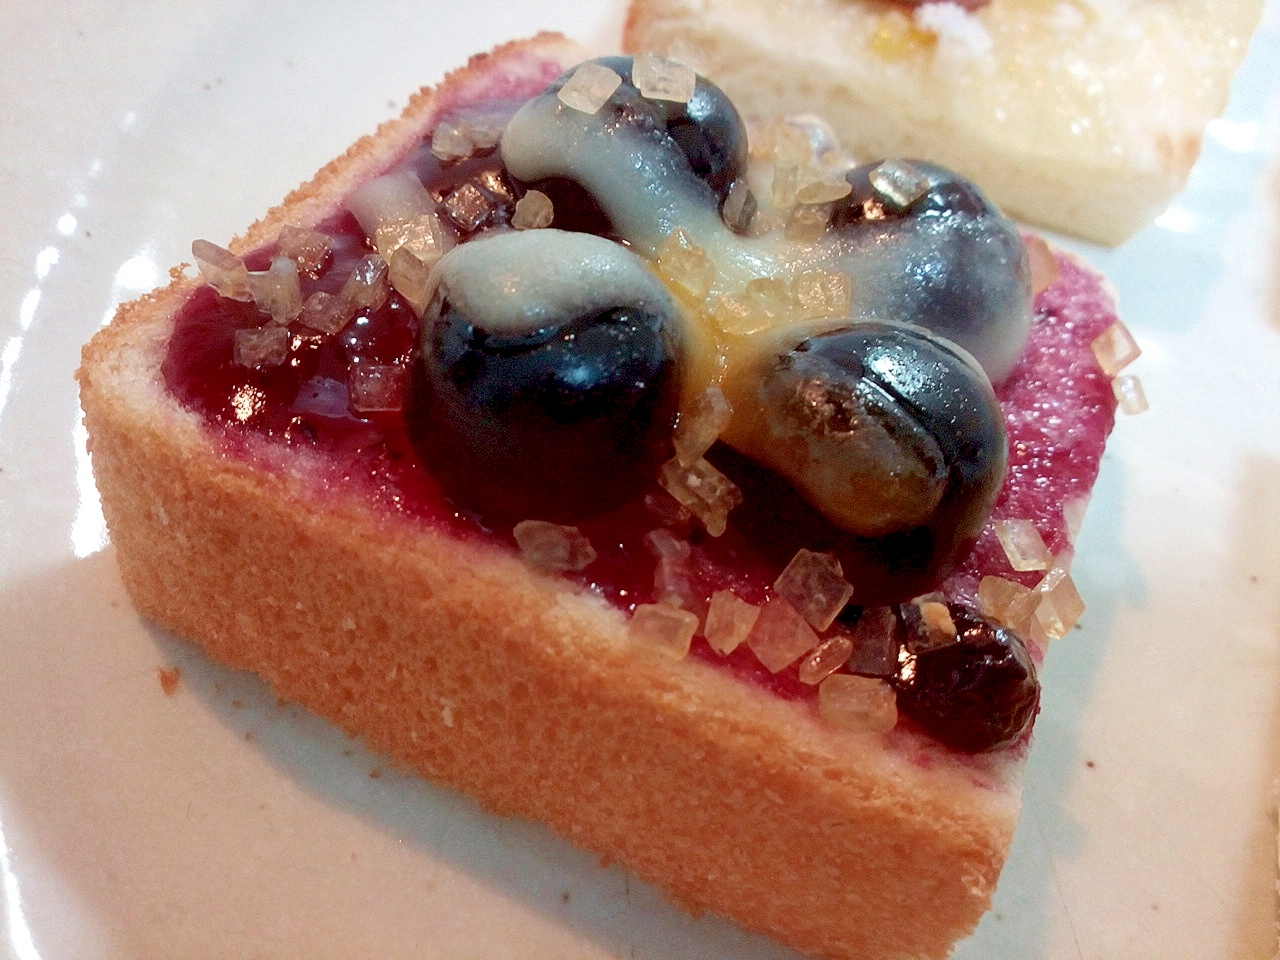 ブルーベリージャムとグレープグミのミニトースト